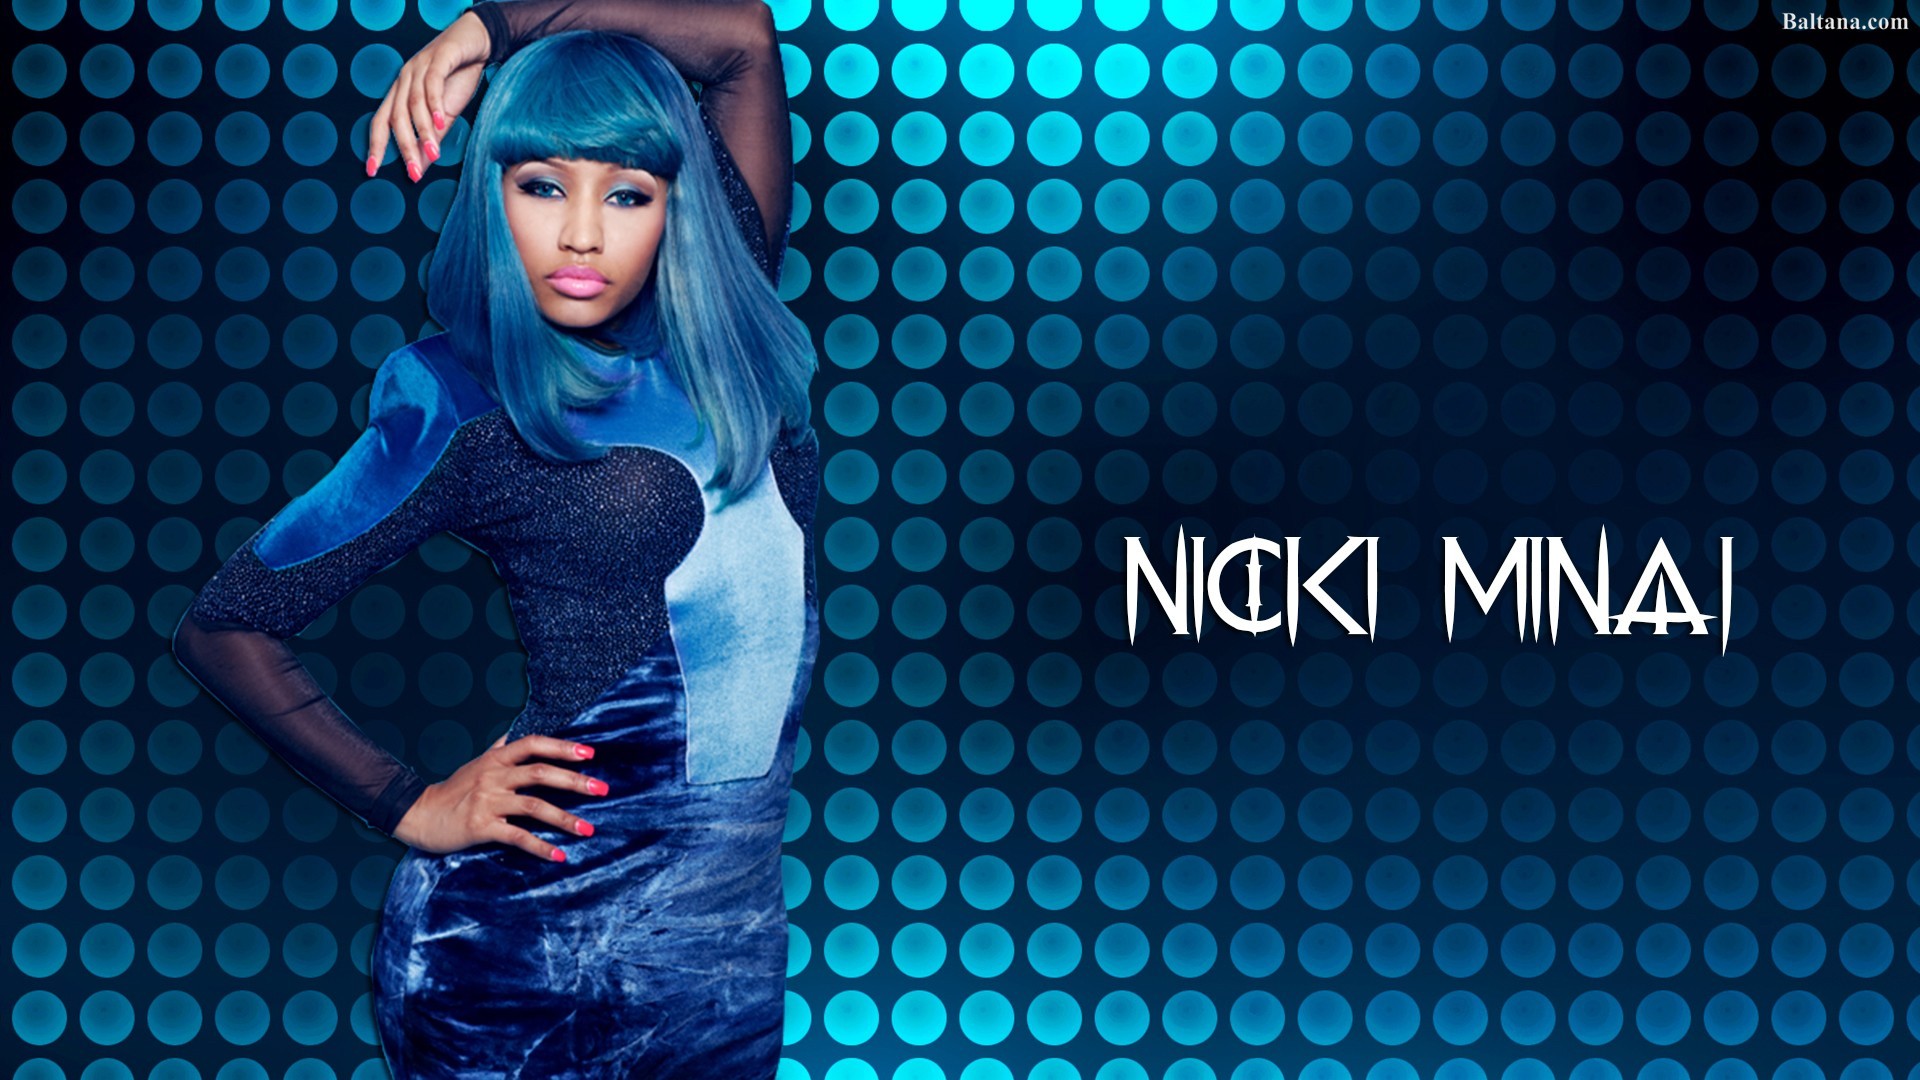 Nicki Minaj Pictures 2011 - HD Wallpaper 